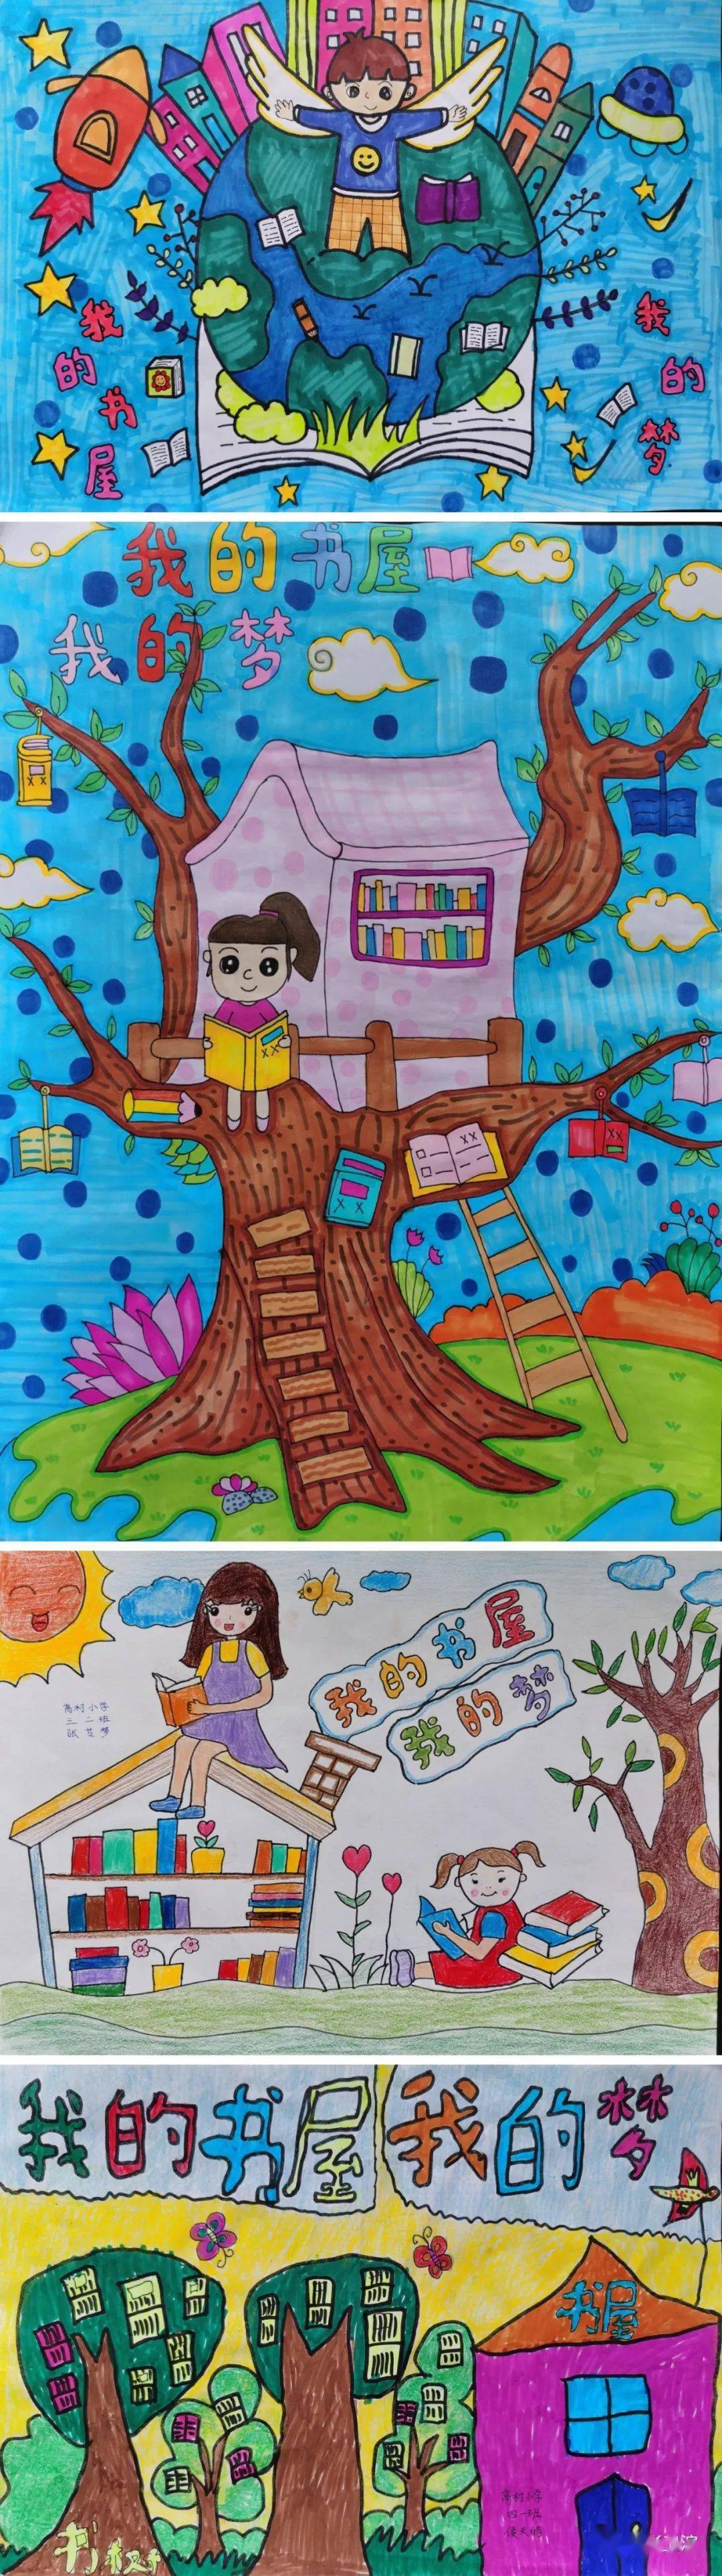 卫滨区2021年我的书屋61我的梦农村少年儿童阅读实践活动作品展